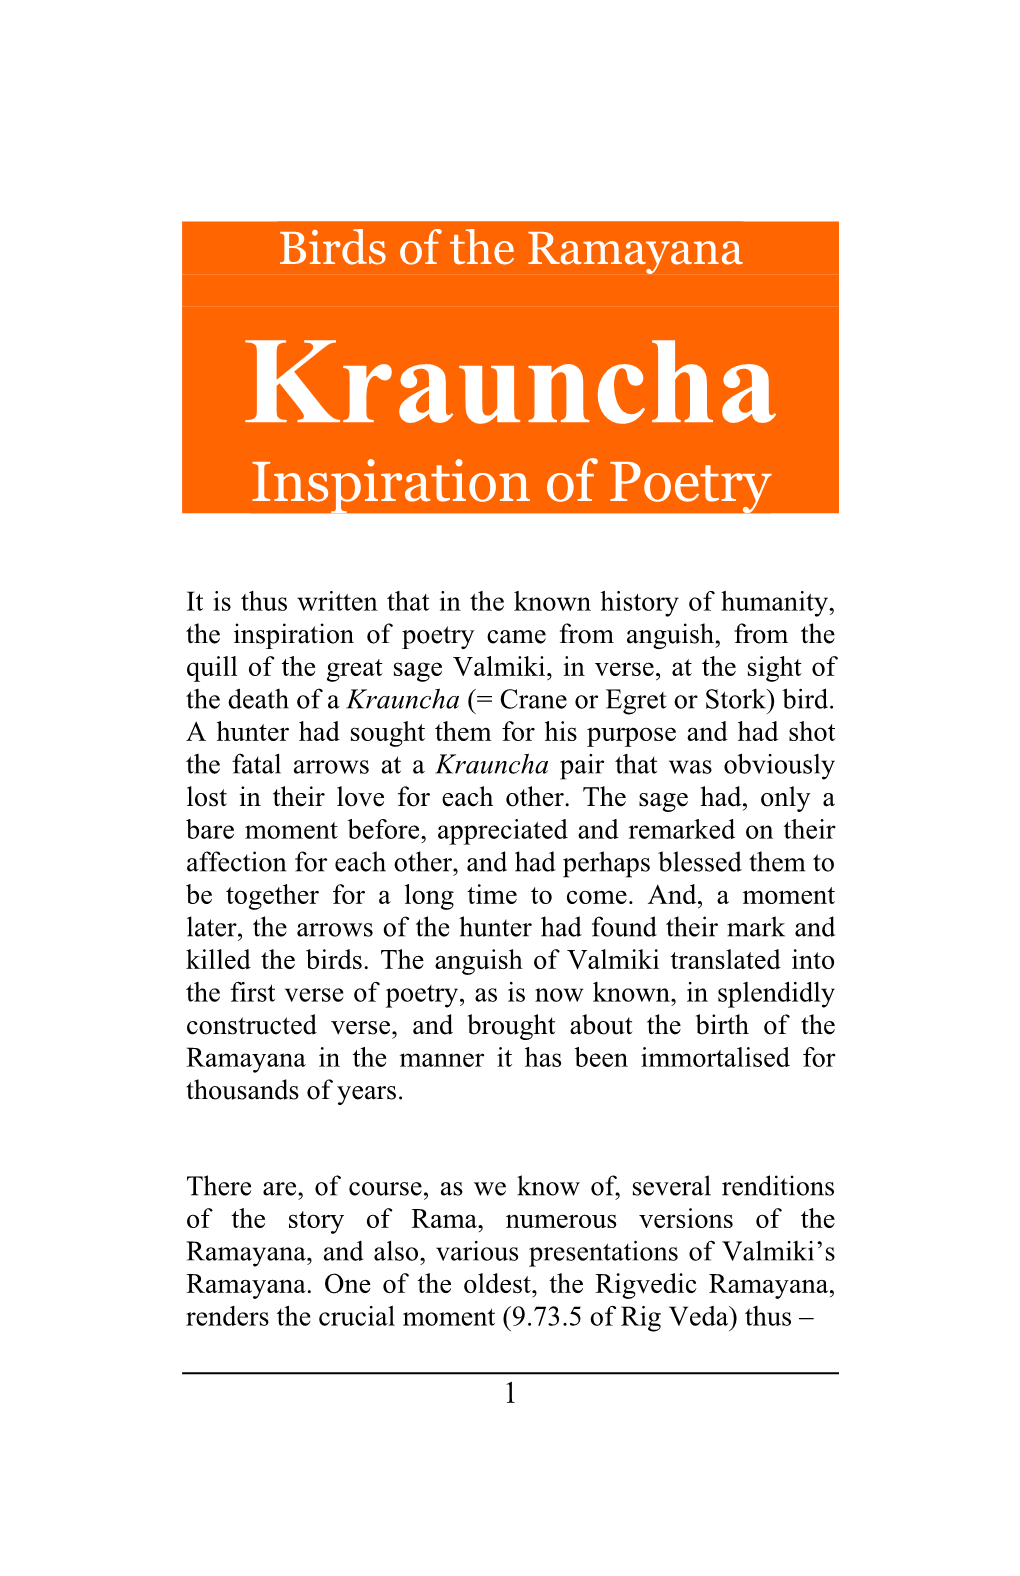 Krauncha Inspiration of Poetry